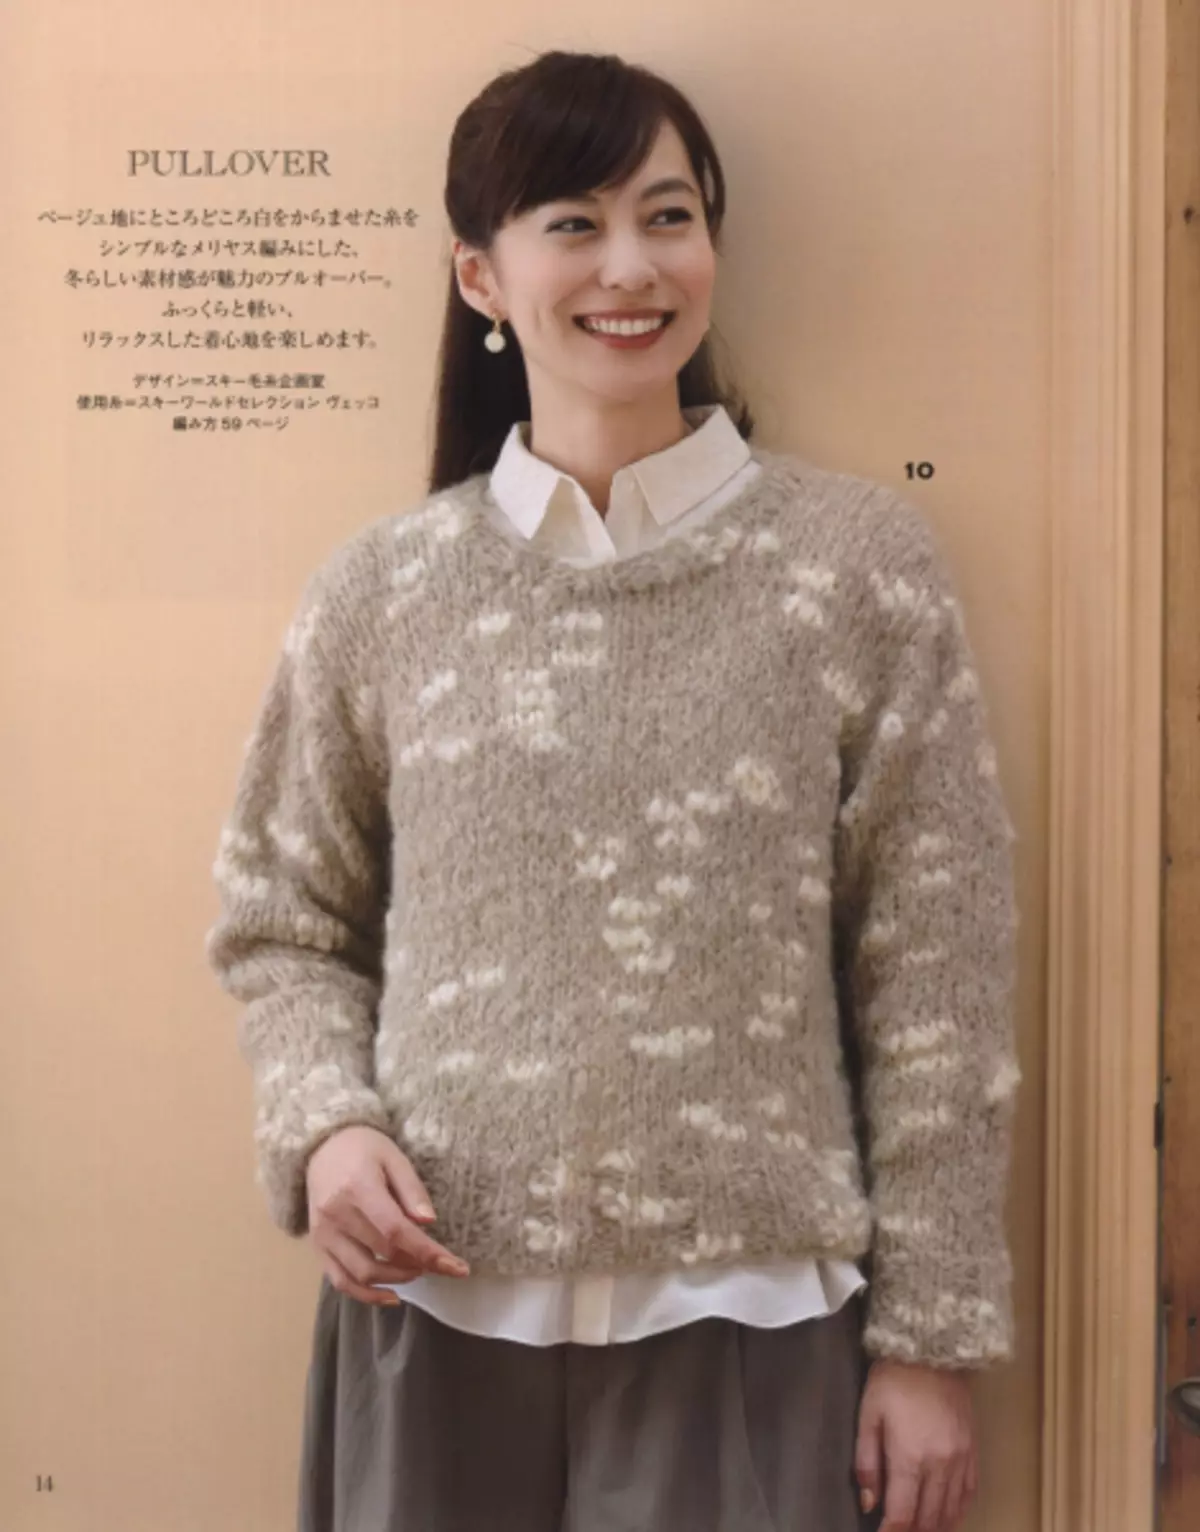 Le magazine japonais "permet de tricoter la série 80554". L'hiver